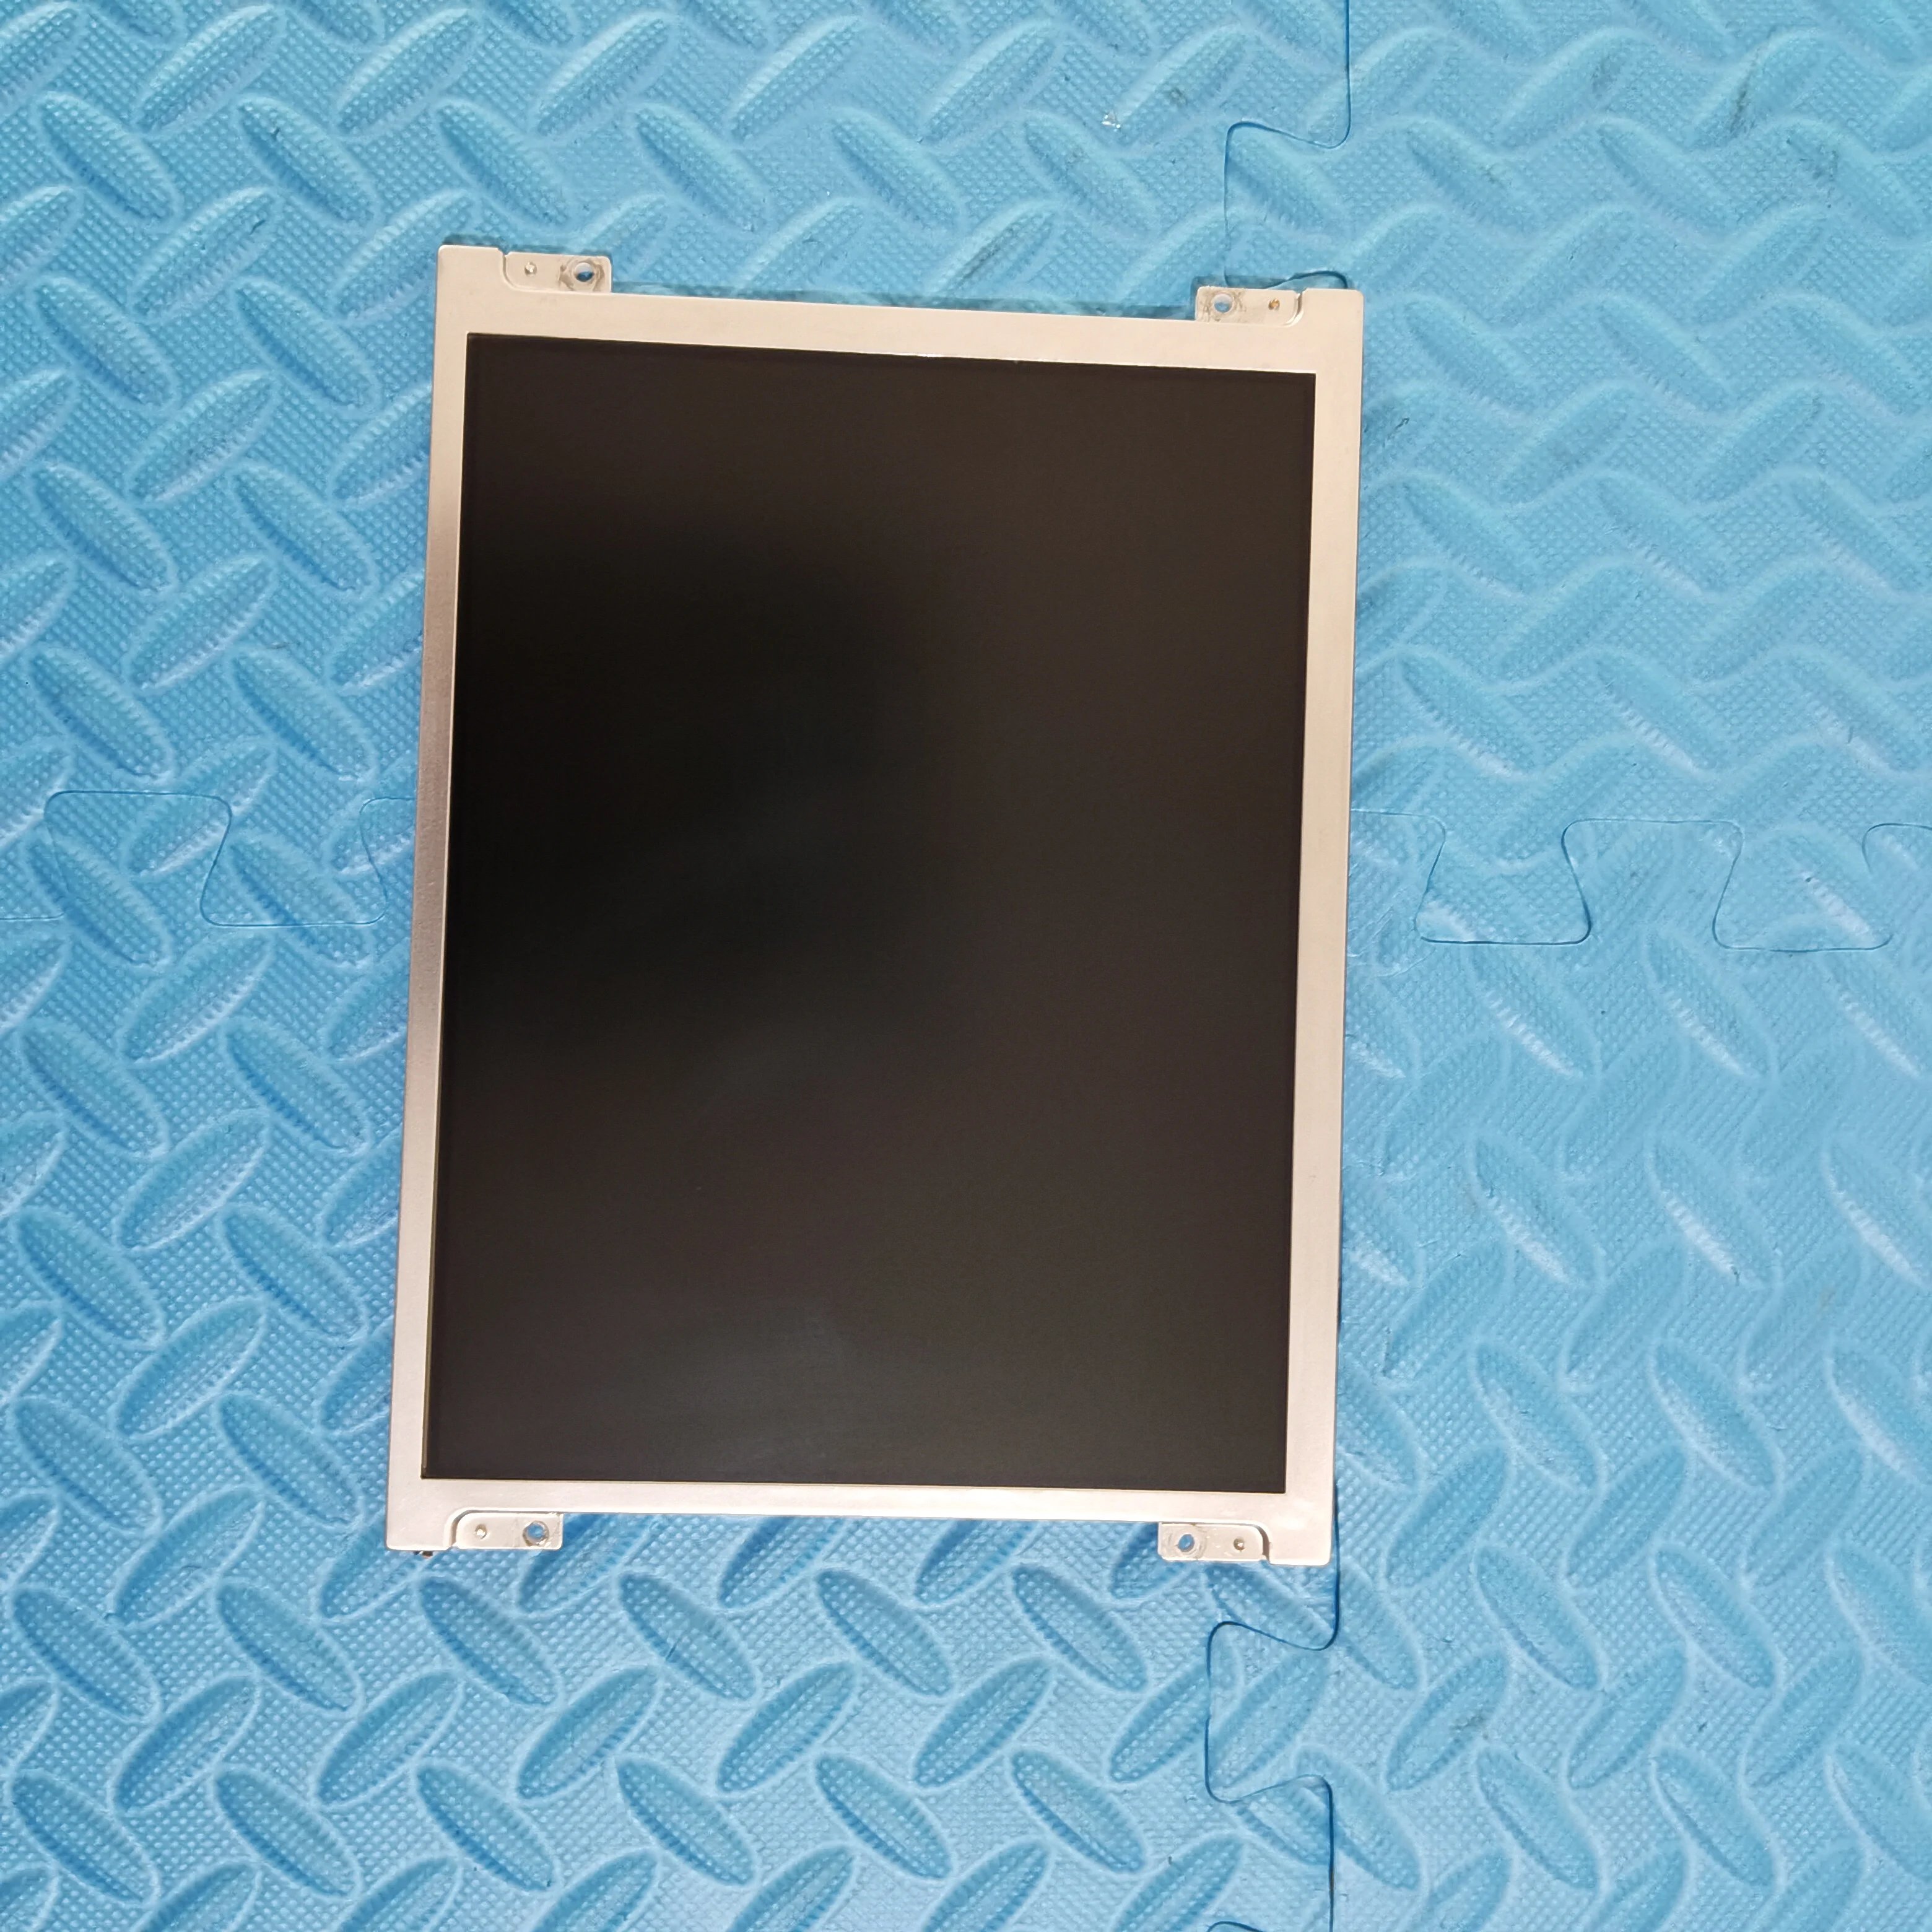 

B084SN02 V.0 LCD display screen